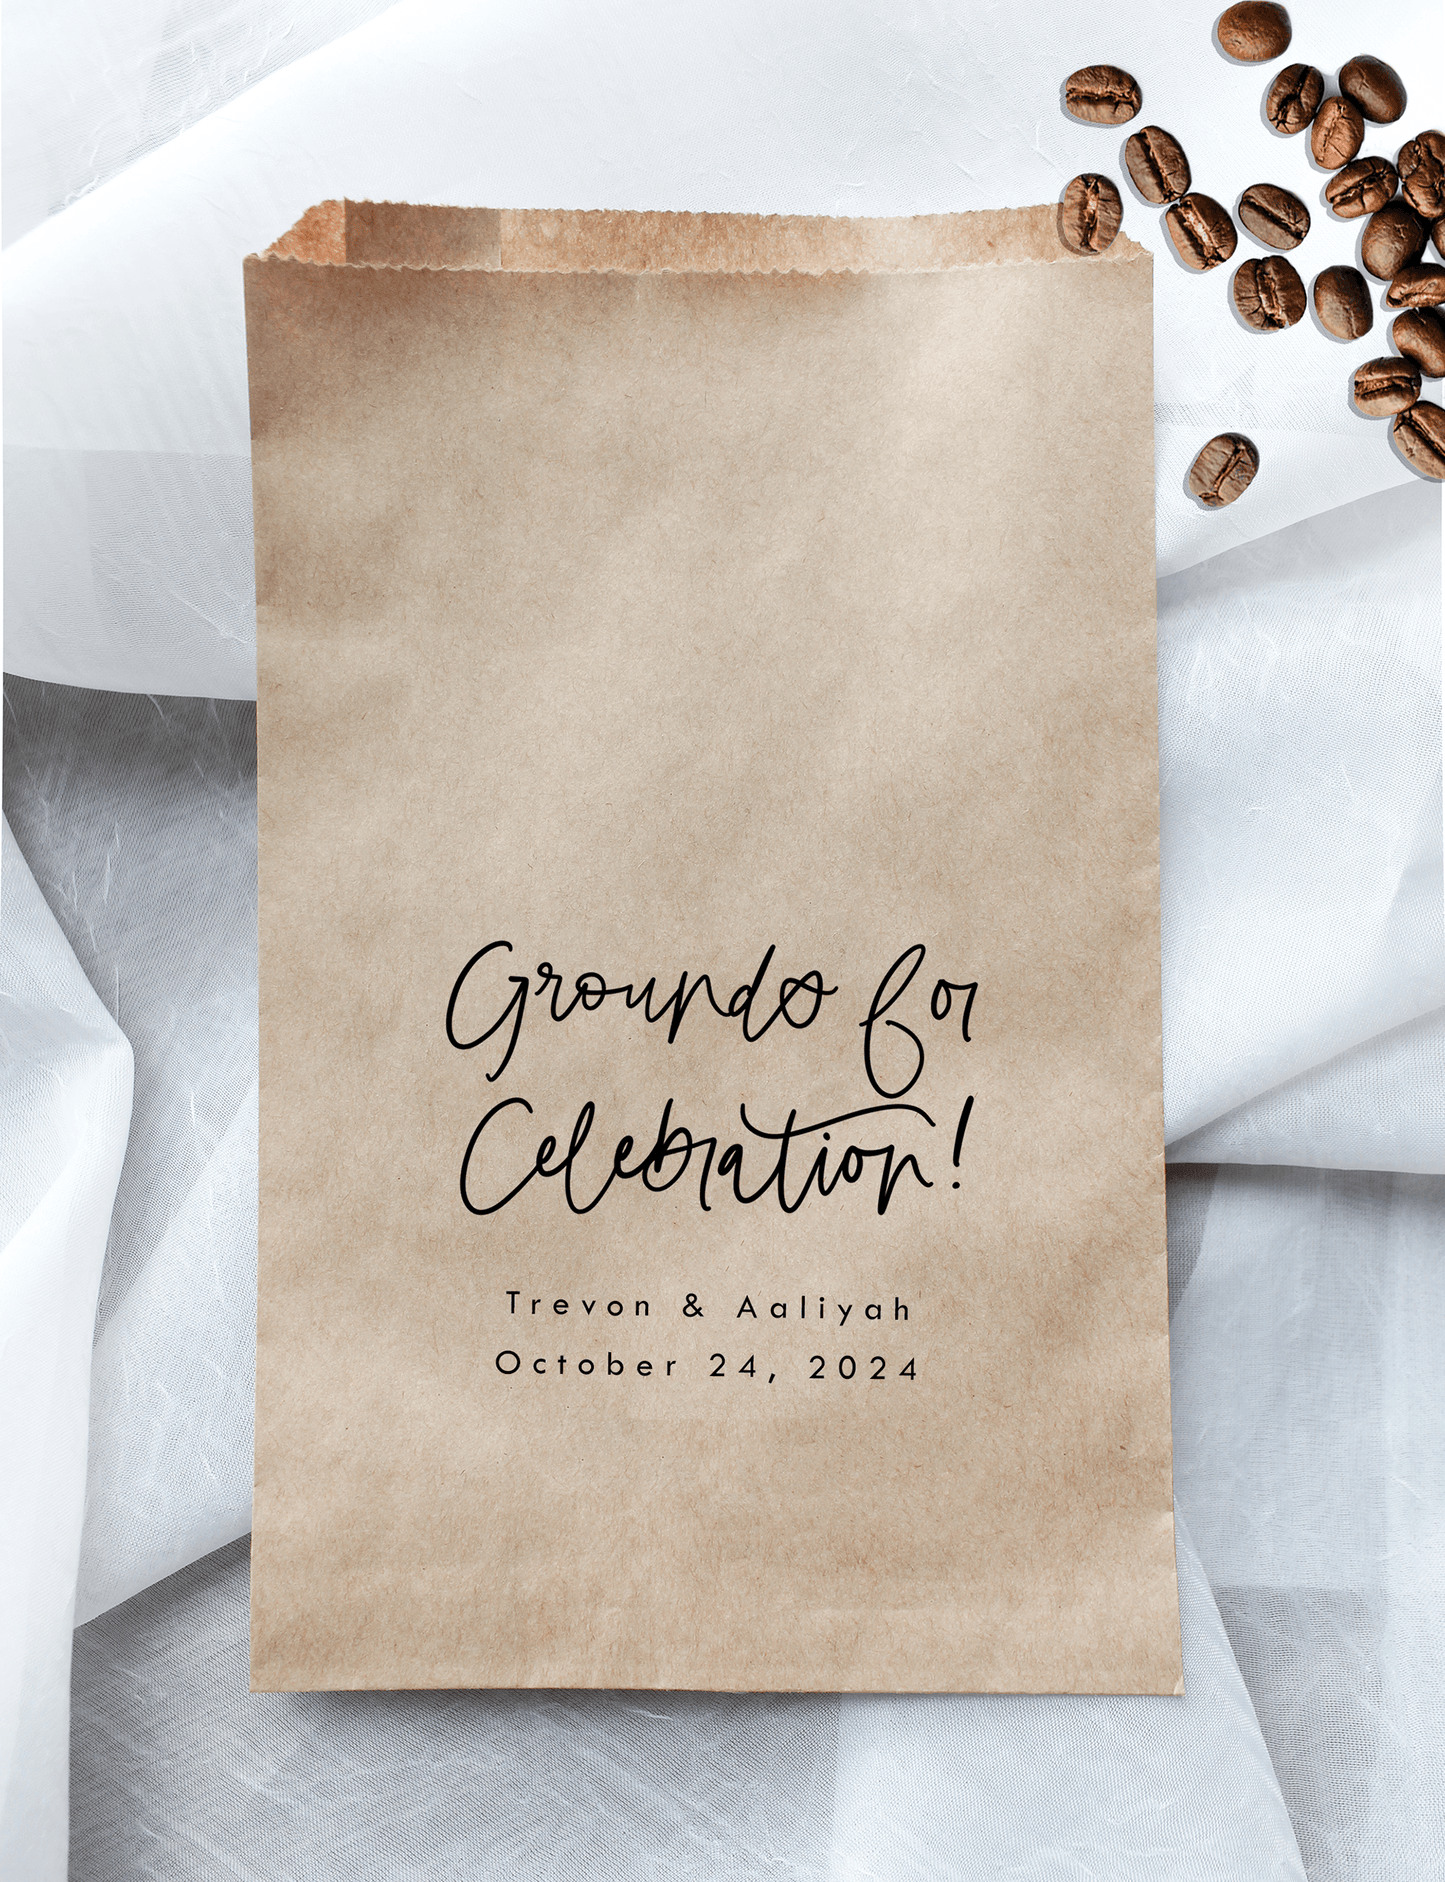 Grounds for Celebration! Coffee Favor Bags - Plum Grove Design